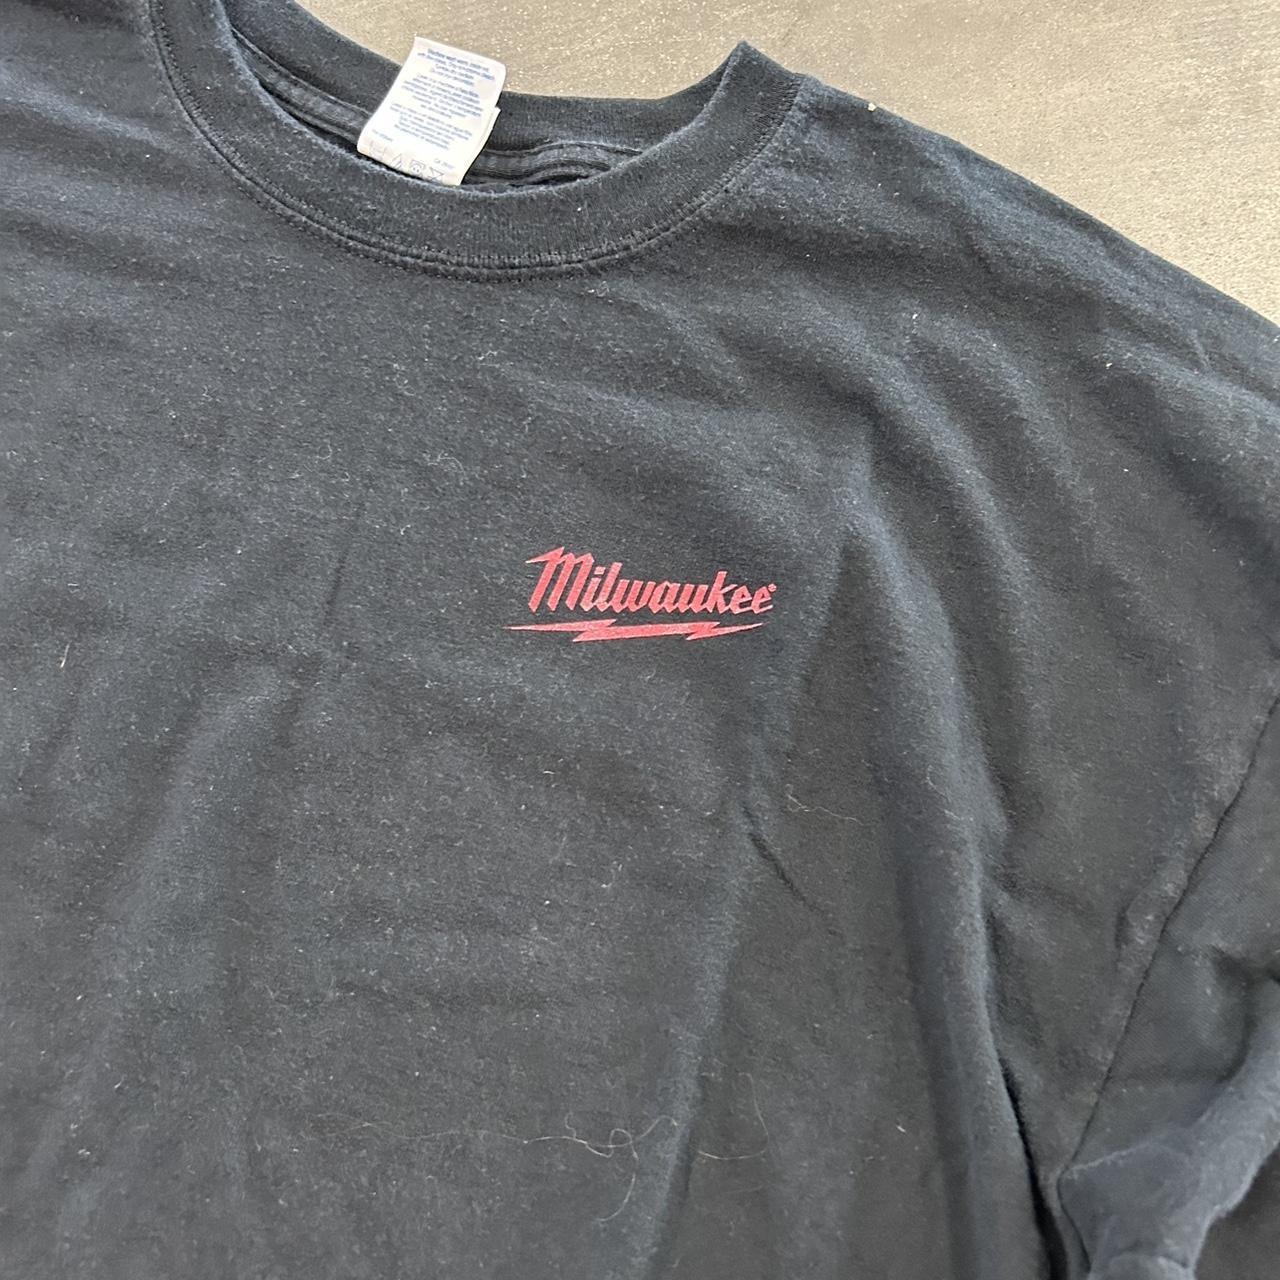 Milwaukee Tools (2) T-Shirt